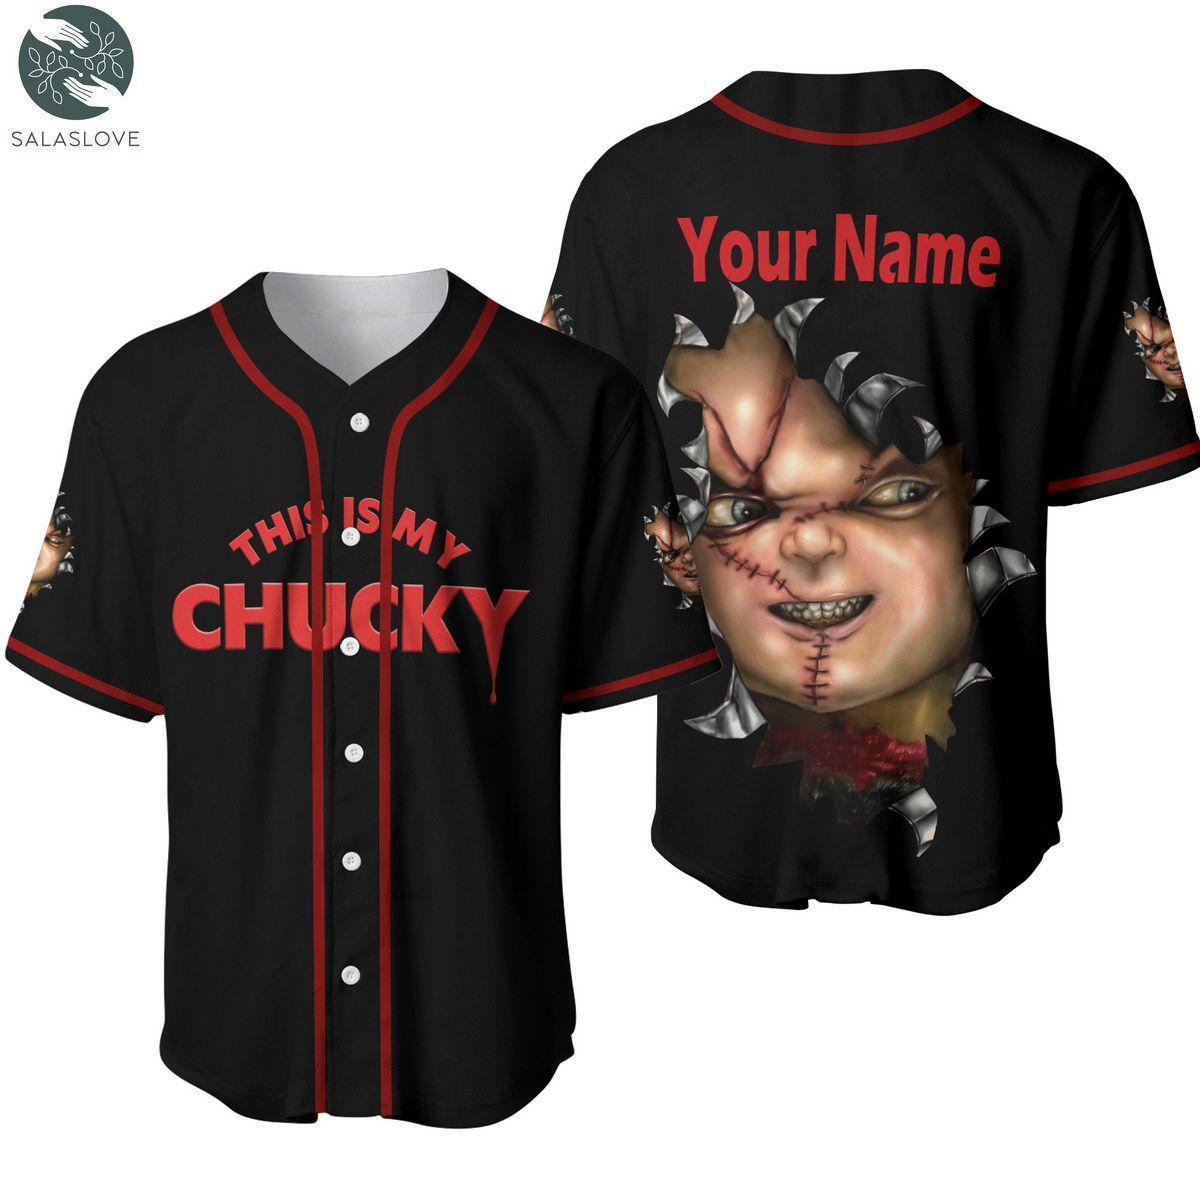 Chucky Baseball Jersey, Horror Movie Chucky Baseball Jersey